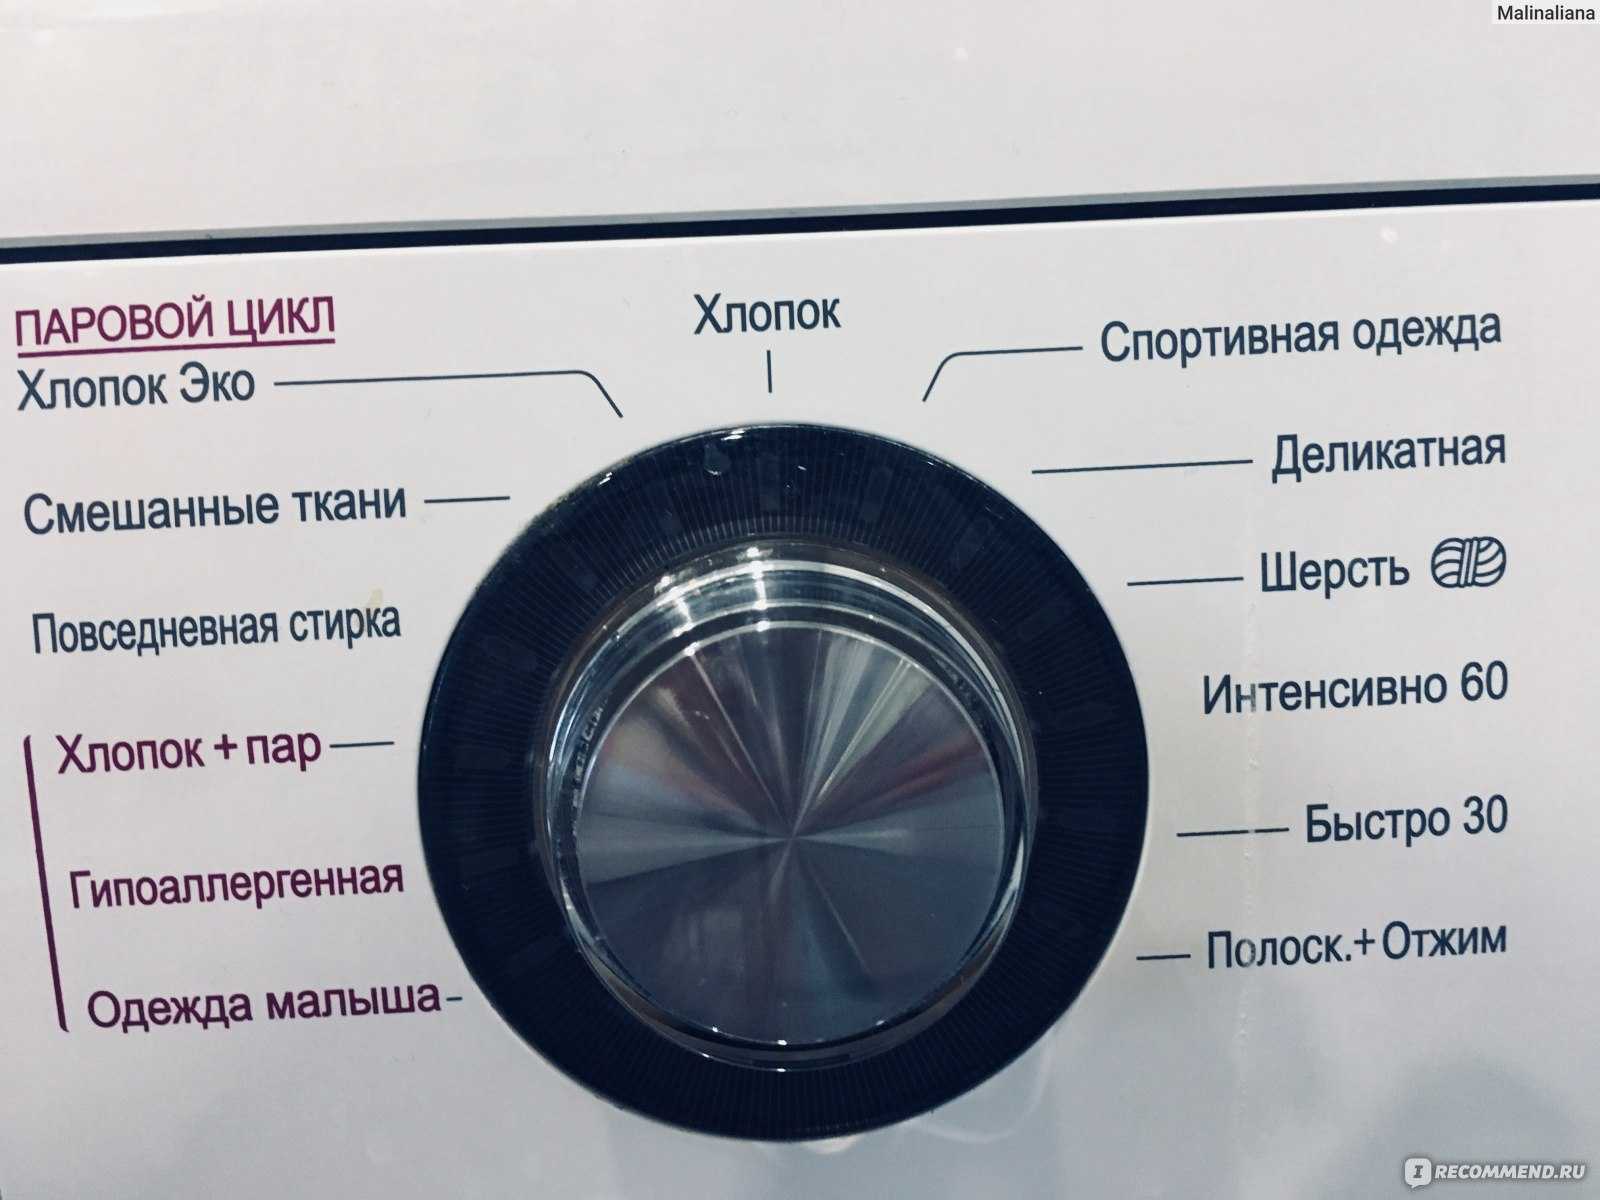 Ошибка 4, 5, 6, ue на дисплее стиральной машины лж драйв директ с прямым приводом на 6kg, как открыть, не отжимает